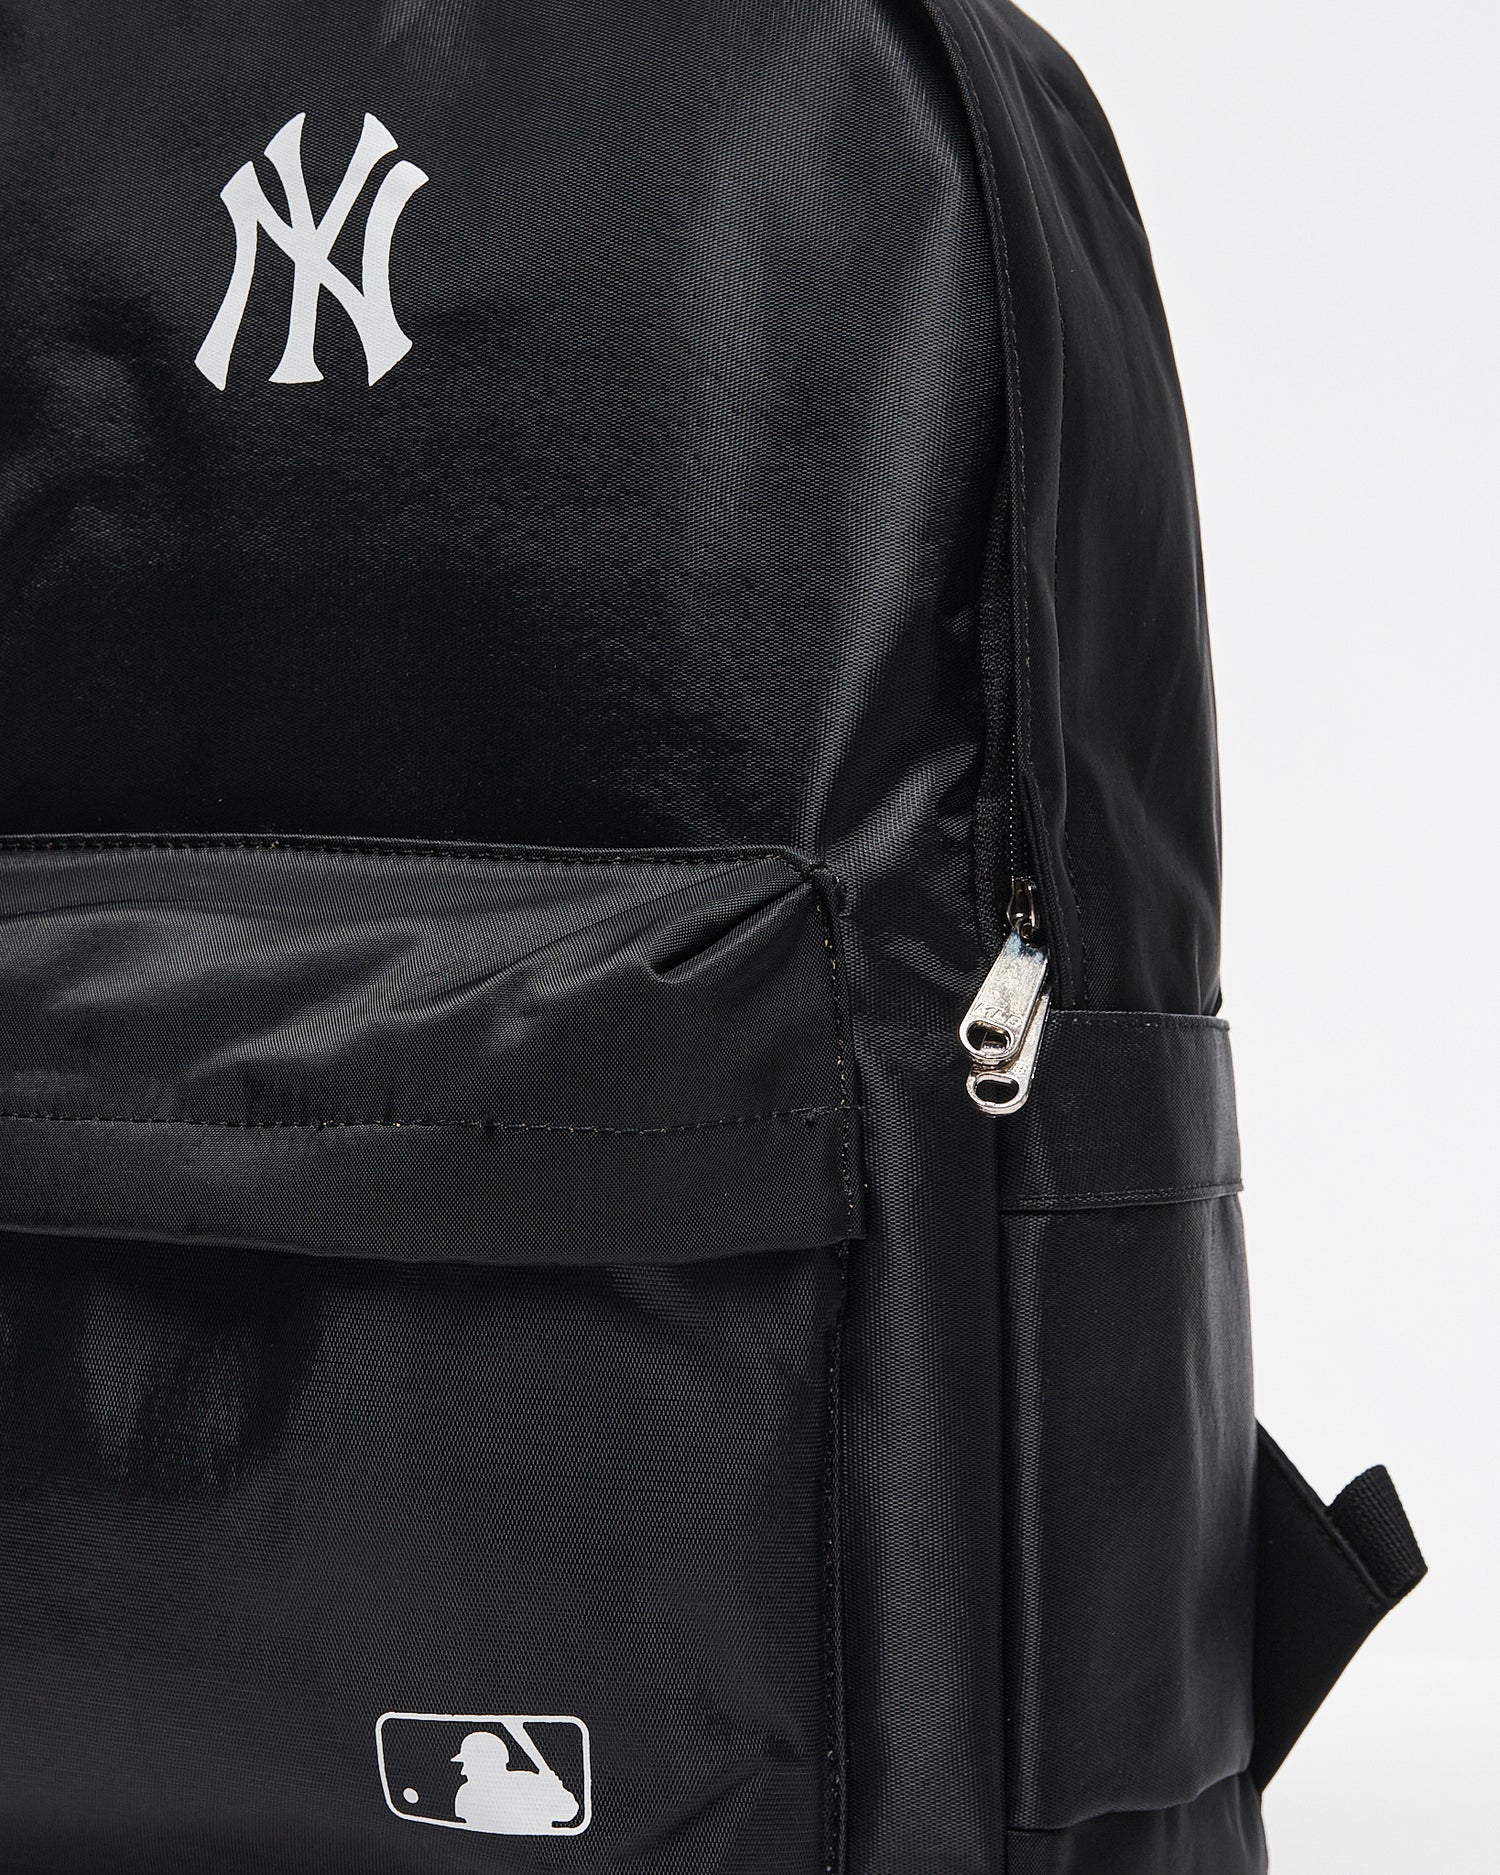 NY Black  Backpack 19.90